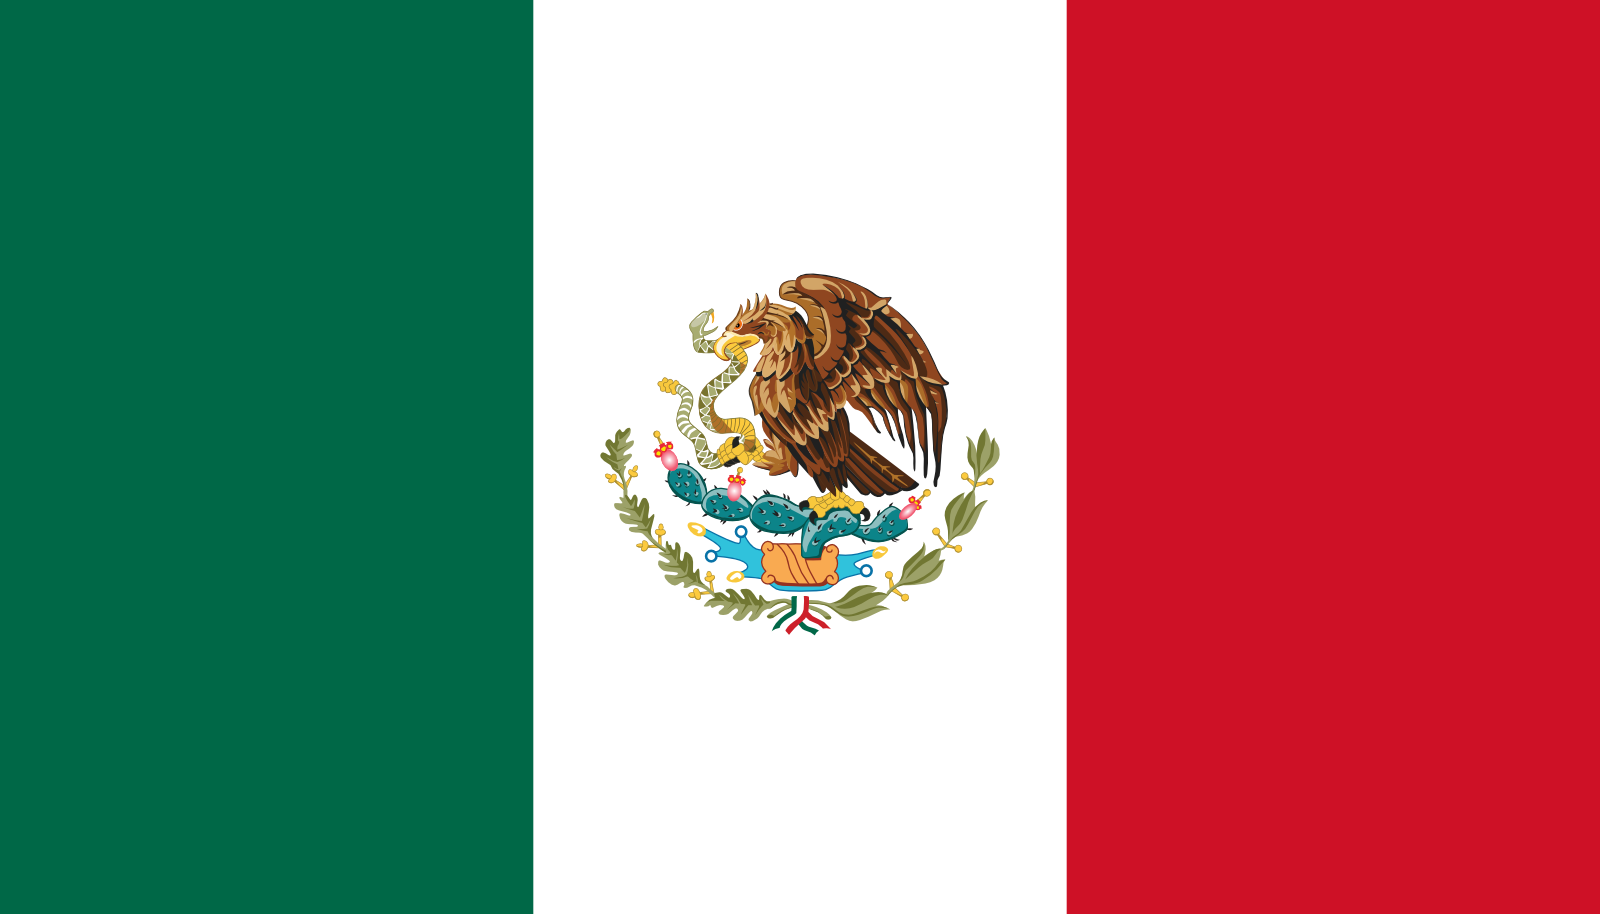 Bild der Staatsflagge Mexiko - mit einer Auflösung von 1600x914 - Nordamerika